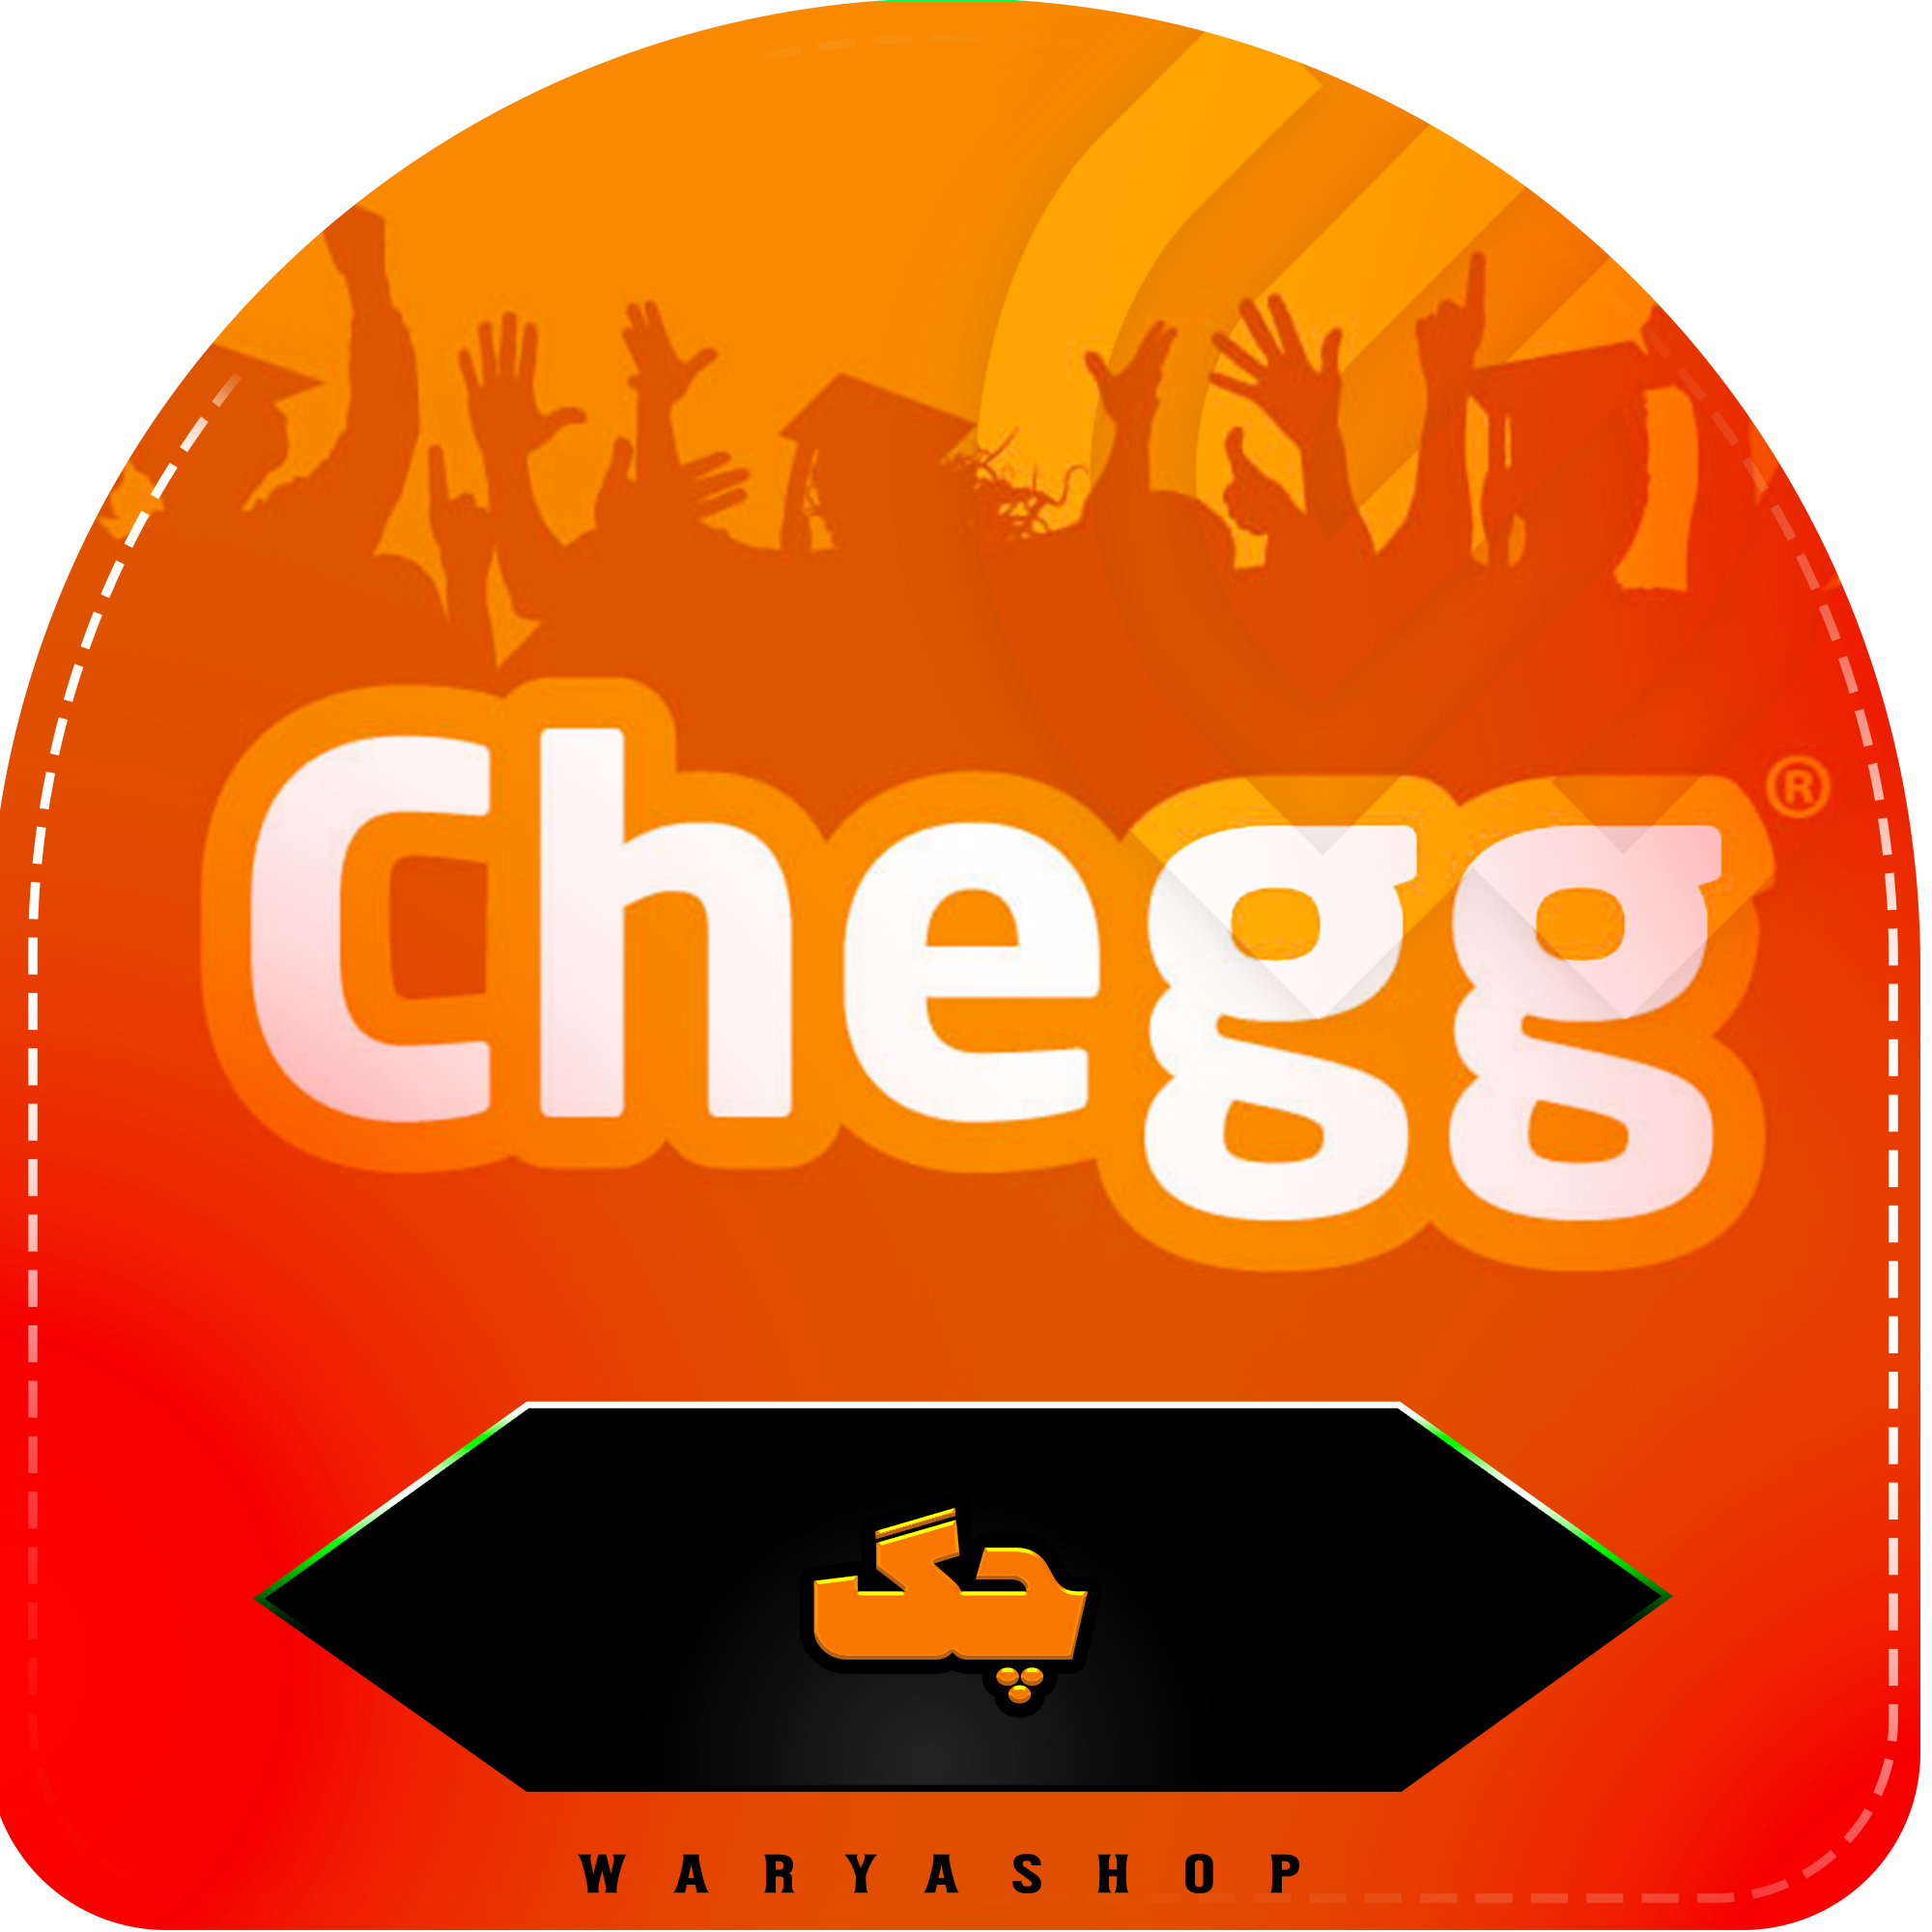 خرید اکانت Chegg چگ با ایمیل شما ارزان (شارژ آنی) یک ماهه